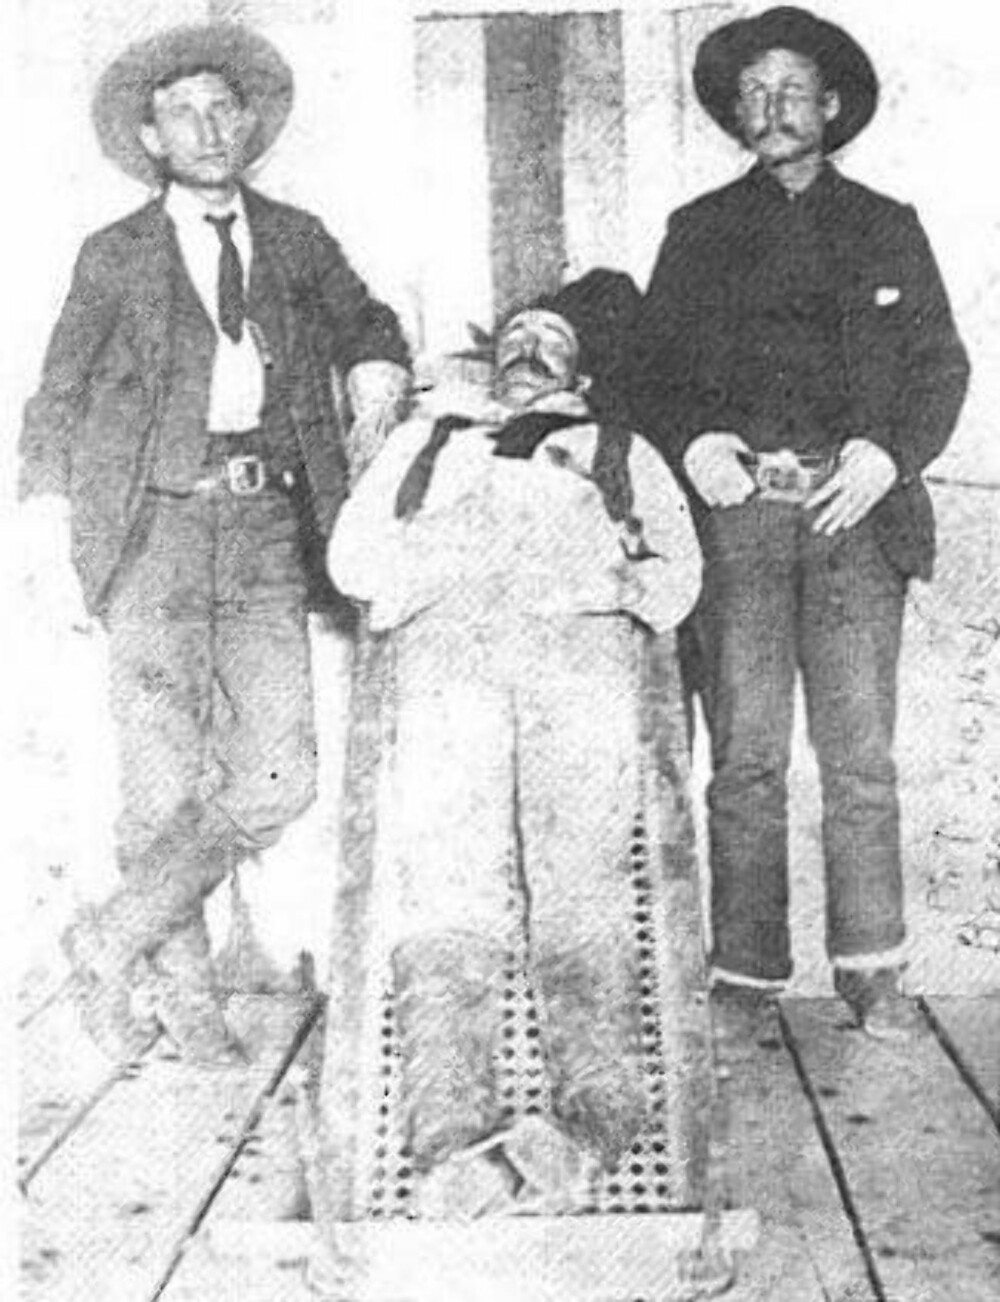 <b>LOVENS MENN: </b>Deputy US Marshals William Banks (venstre) og Isaac S. Prater (høyre) drepte William "Tulsa Jack" Blake i nærheten av Dover, Oklahoma-territoriet i 1895